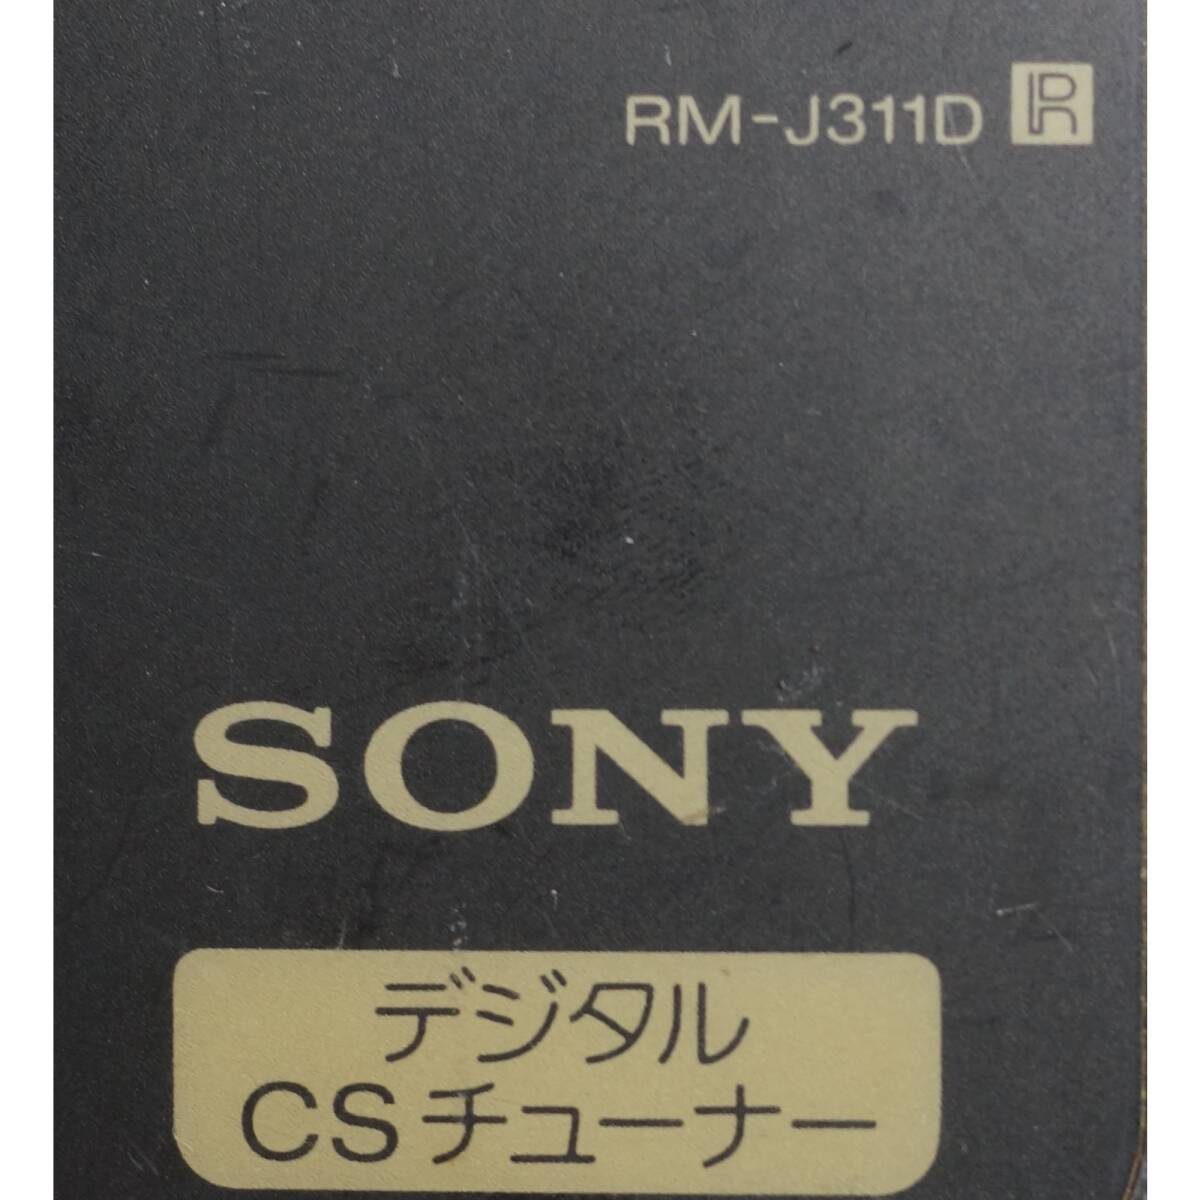  Sony SONY CS тюнер дистанционный пульт RM-J311D